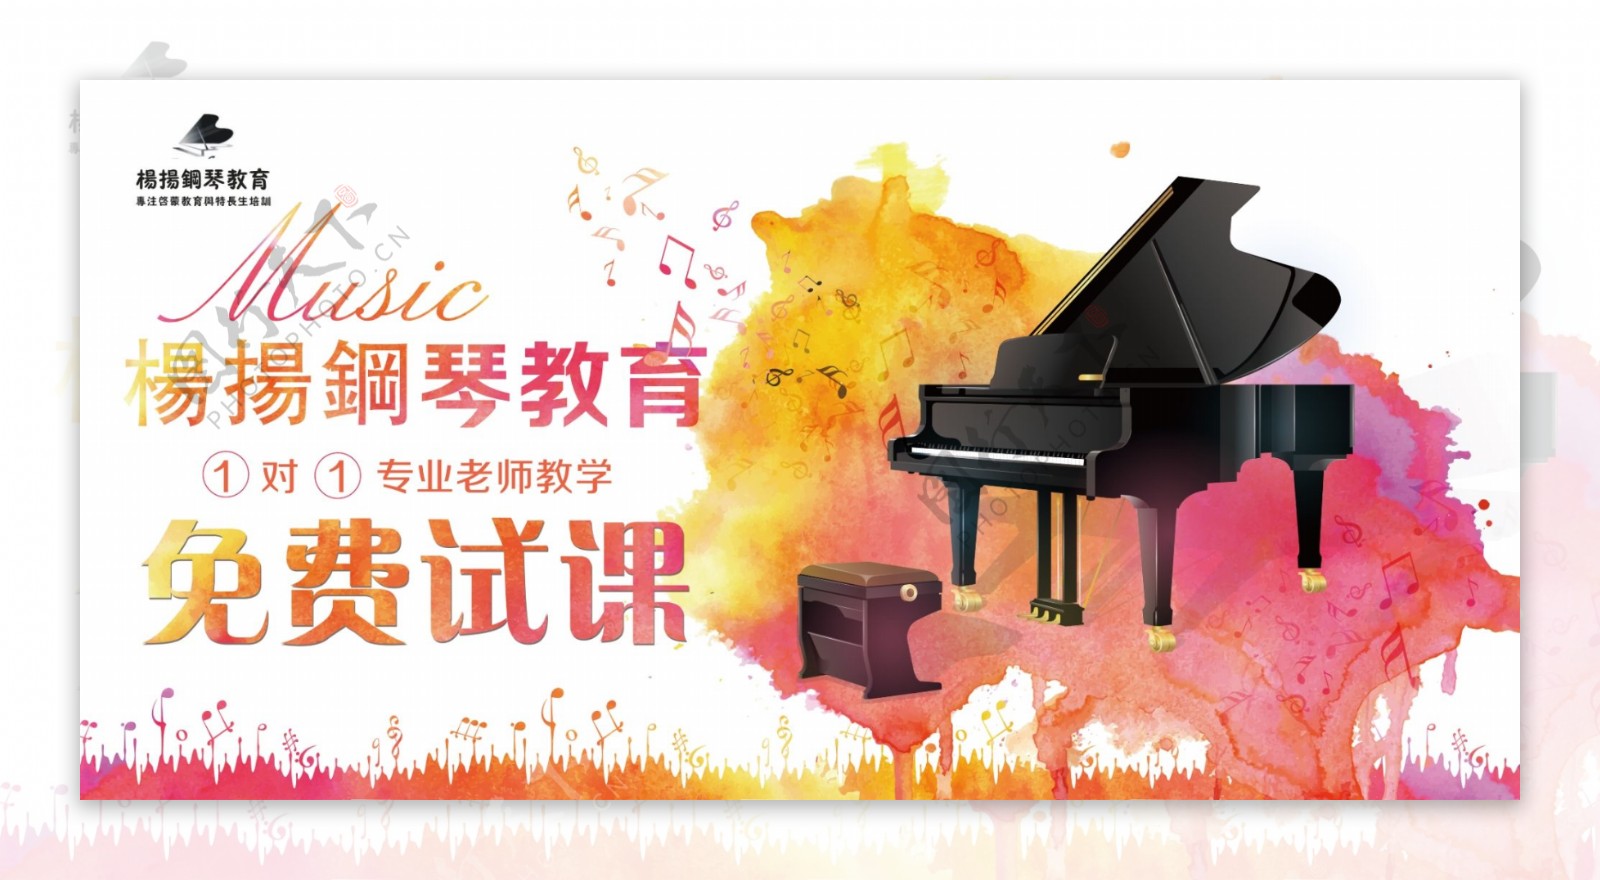 钢琴培训教育海报展板宣传图片